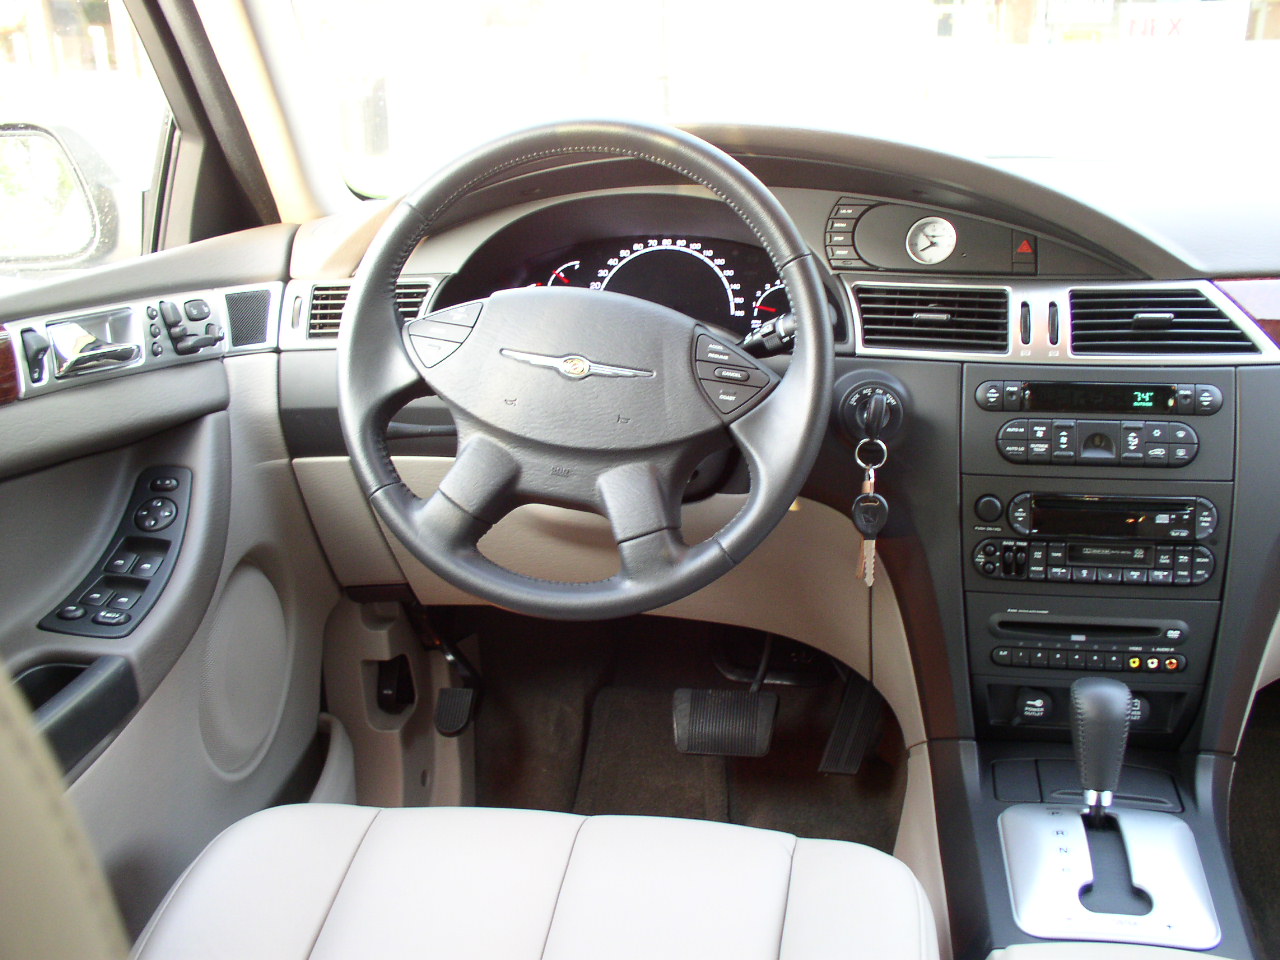 2005 Chrysler pacifica interior #1